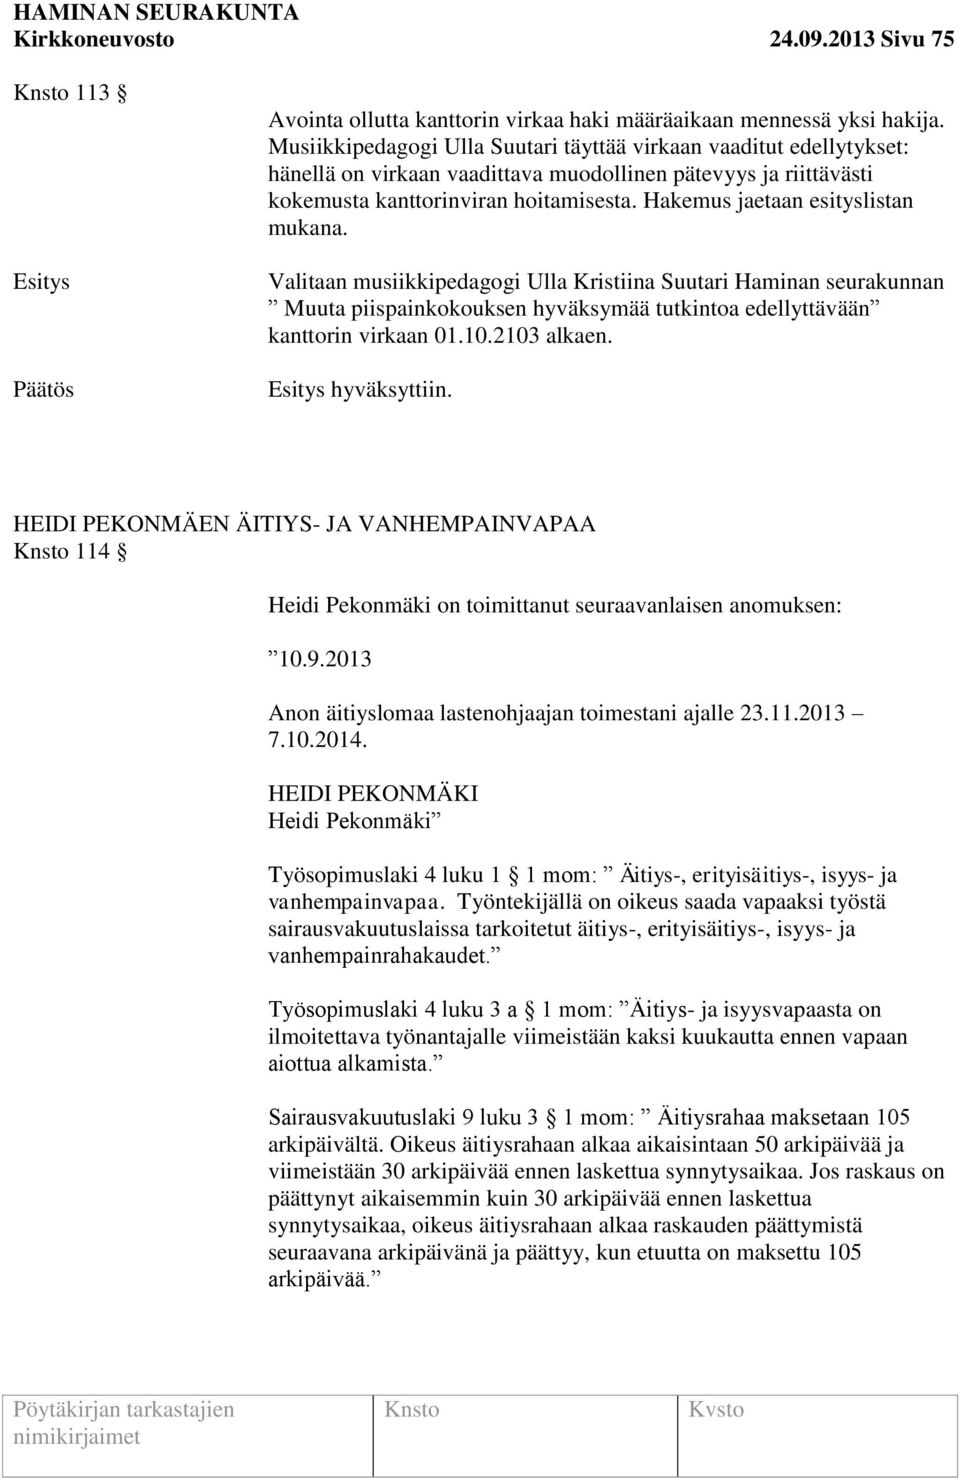 Hakemus jaetaan esityslistan mukana. Valitaan musiikkipedagogi Ulla Kristiina Suutari Haminan seurakunnan Muuta piispainkokouksen hyväksymää tutkintoa edellyttävään kanttorin virkaan 01.10.